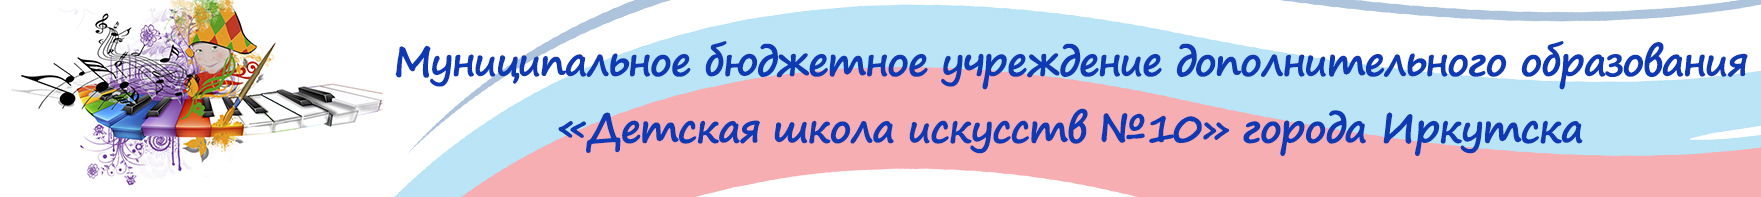 Муниципальное бюджетное учреждение дополнительного образования "Детская школа искусств №10" города Иркутска